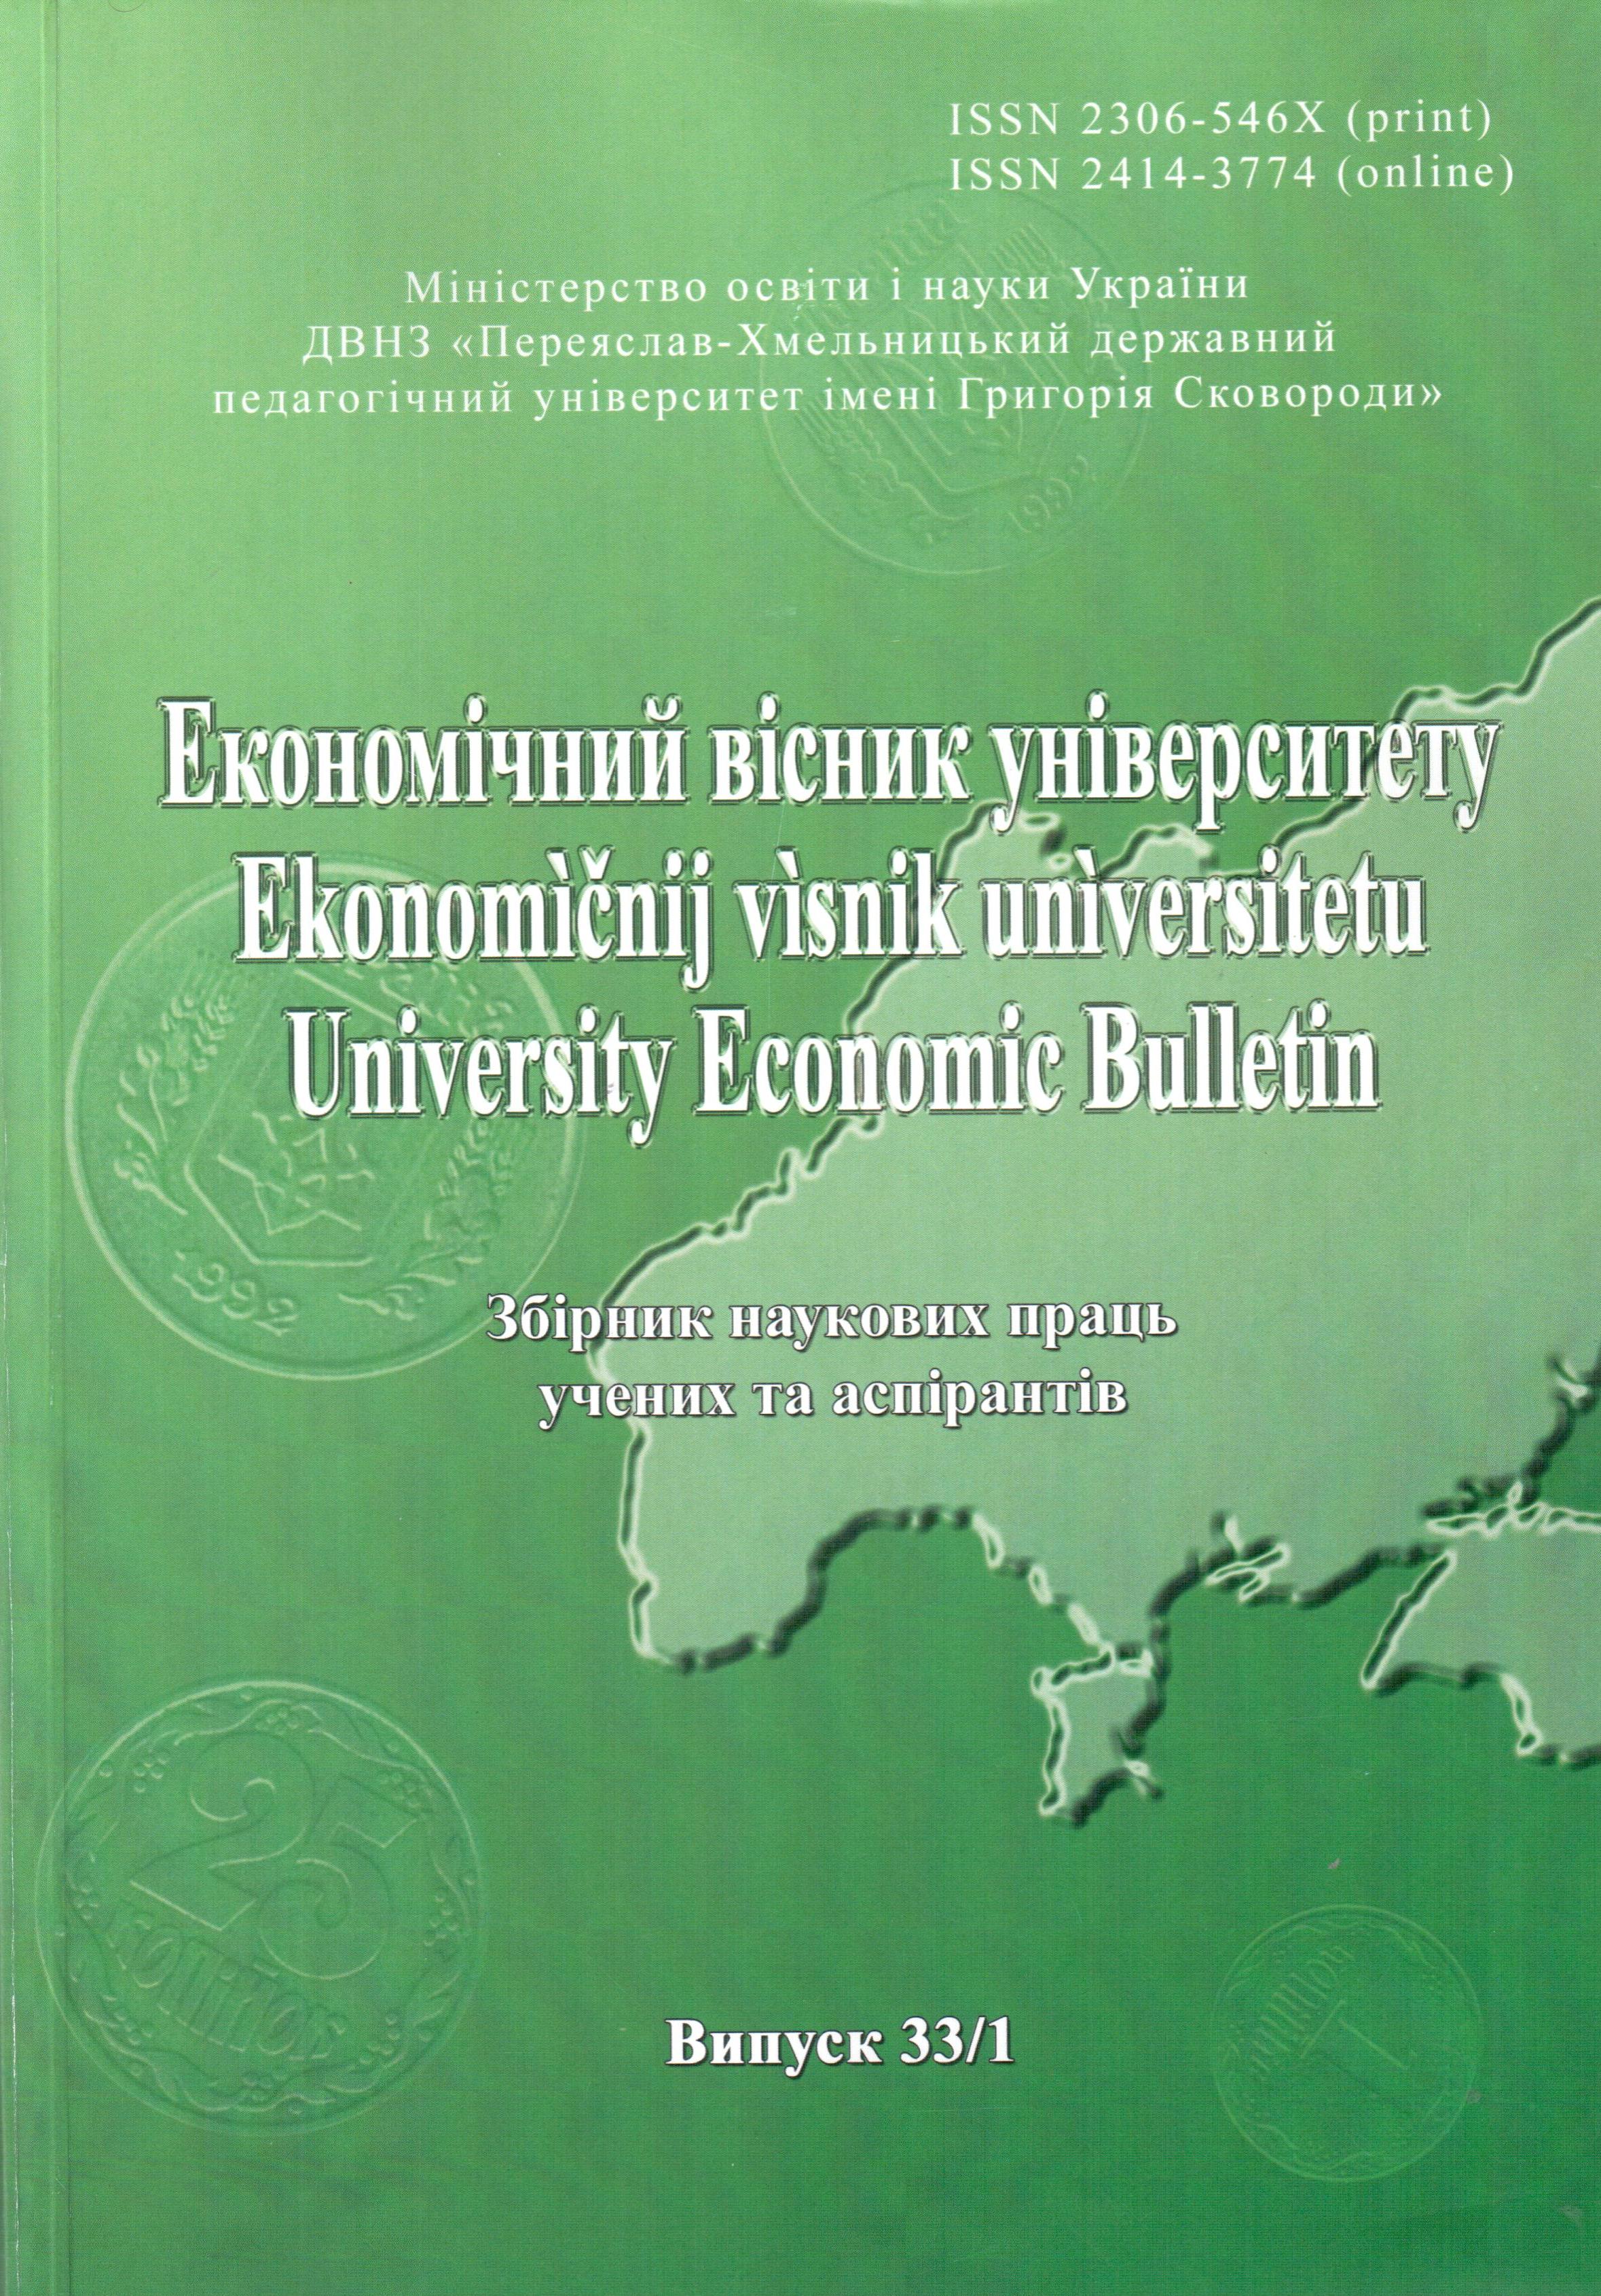 Совершенствование прогнозирования социально-экономического развития: опыт Республики Беларусь